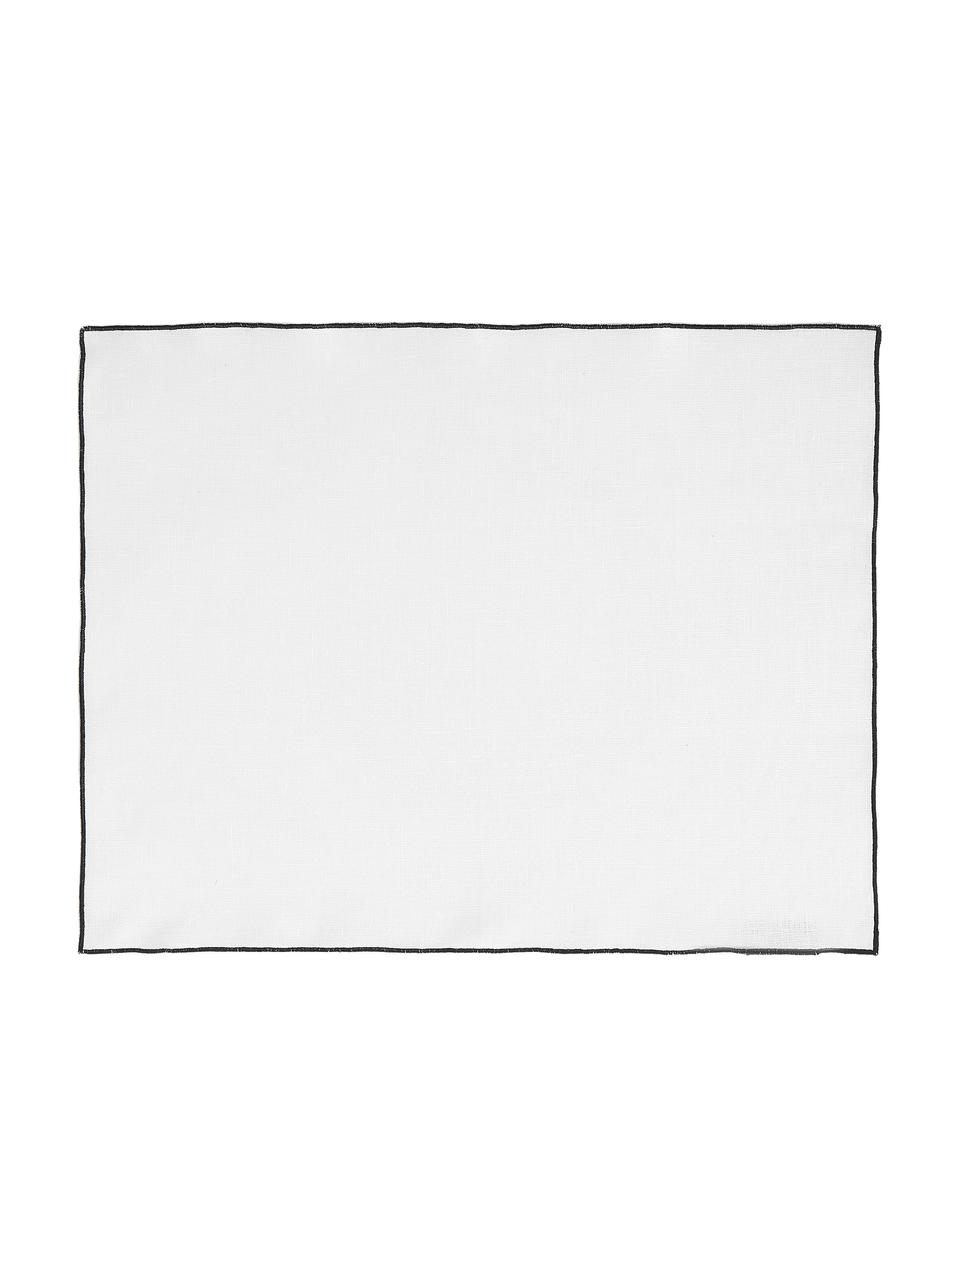 Leinen-Tischsets Vilnia mit Umkettelung, 6 Stück, 100 % Leinen, Weiß, Schwarz, B 37 x L 47 cm